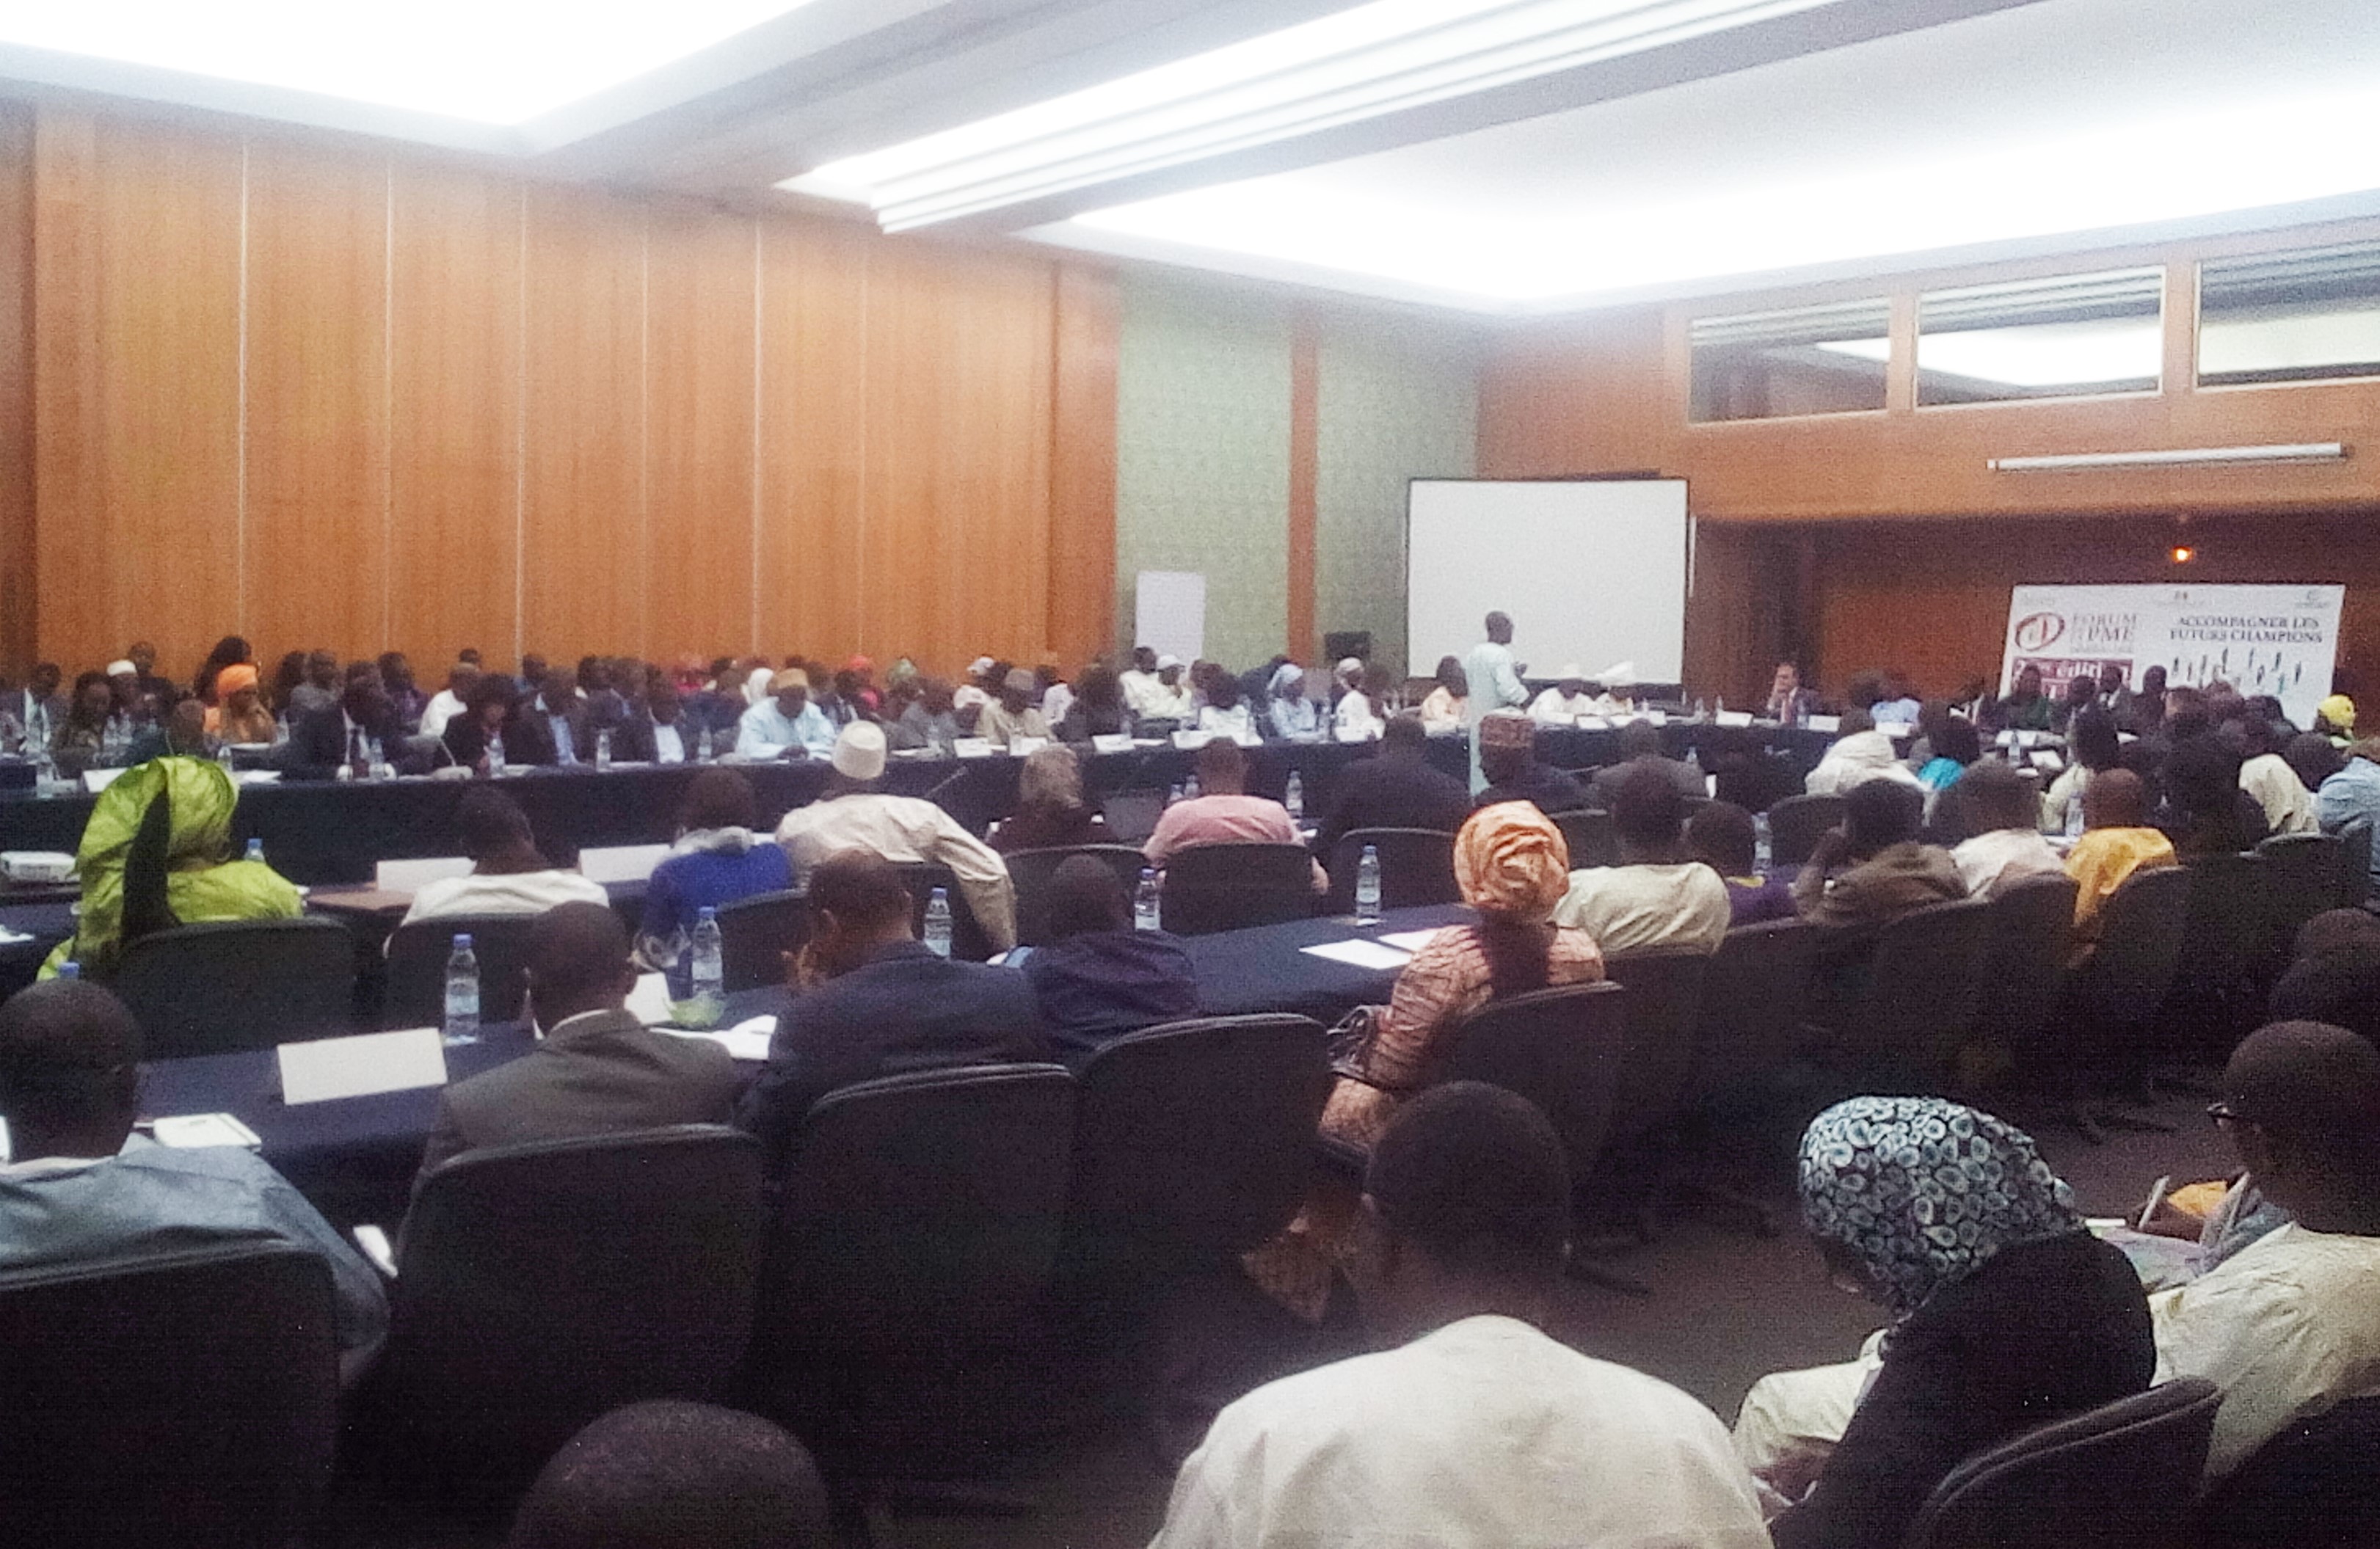 2ème forum de la PME sénégalaise/ Échanges entre les acteurs sur les risques et le financement massif : Le ministre du commerce promet de transmette le cahier de recommandations au gouvernement pour venir au chevet des PME